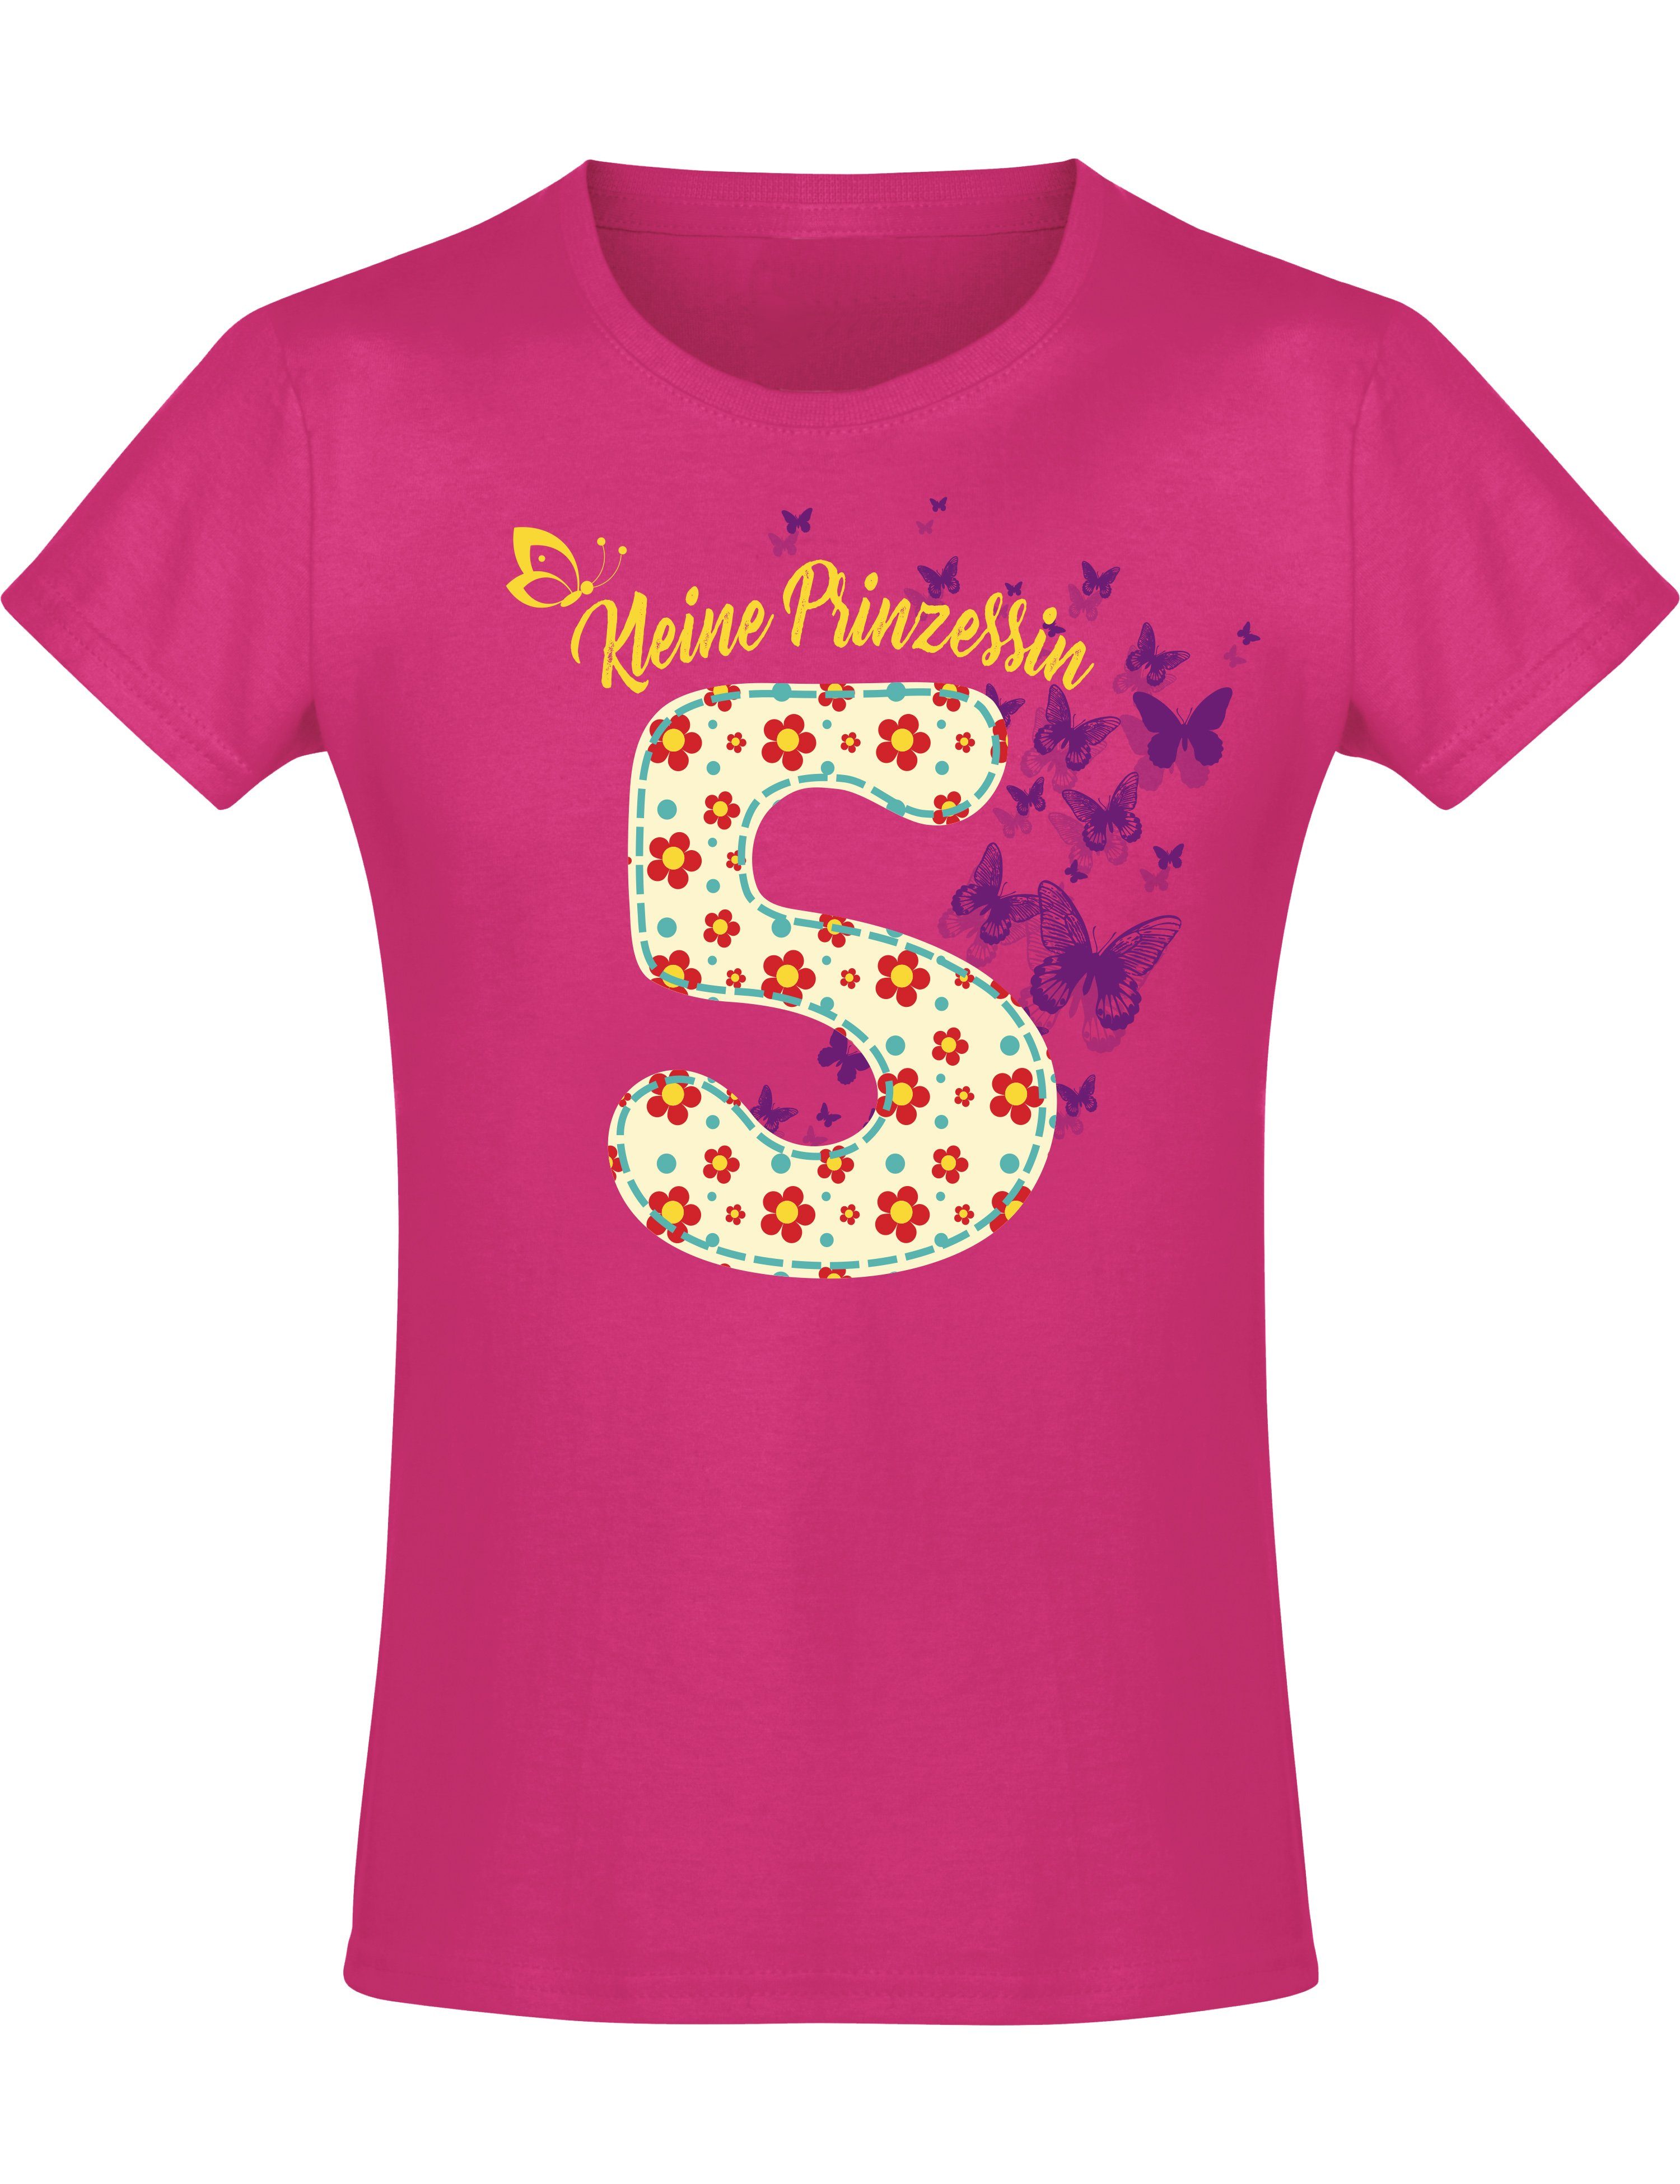 Baddery Print-Shirt Geburstagsgeschenk für Mädchen : 5 Jahre mit Blumen, hochwertiger Siebdruck, aus Baumwolle